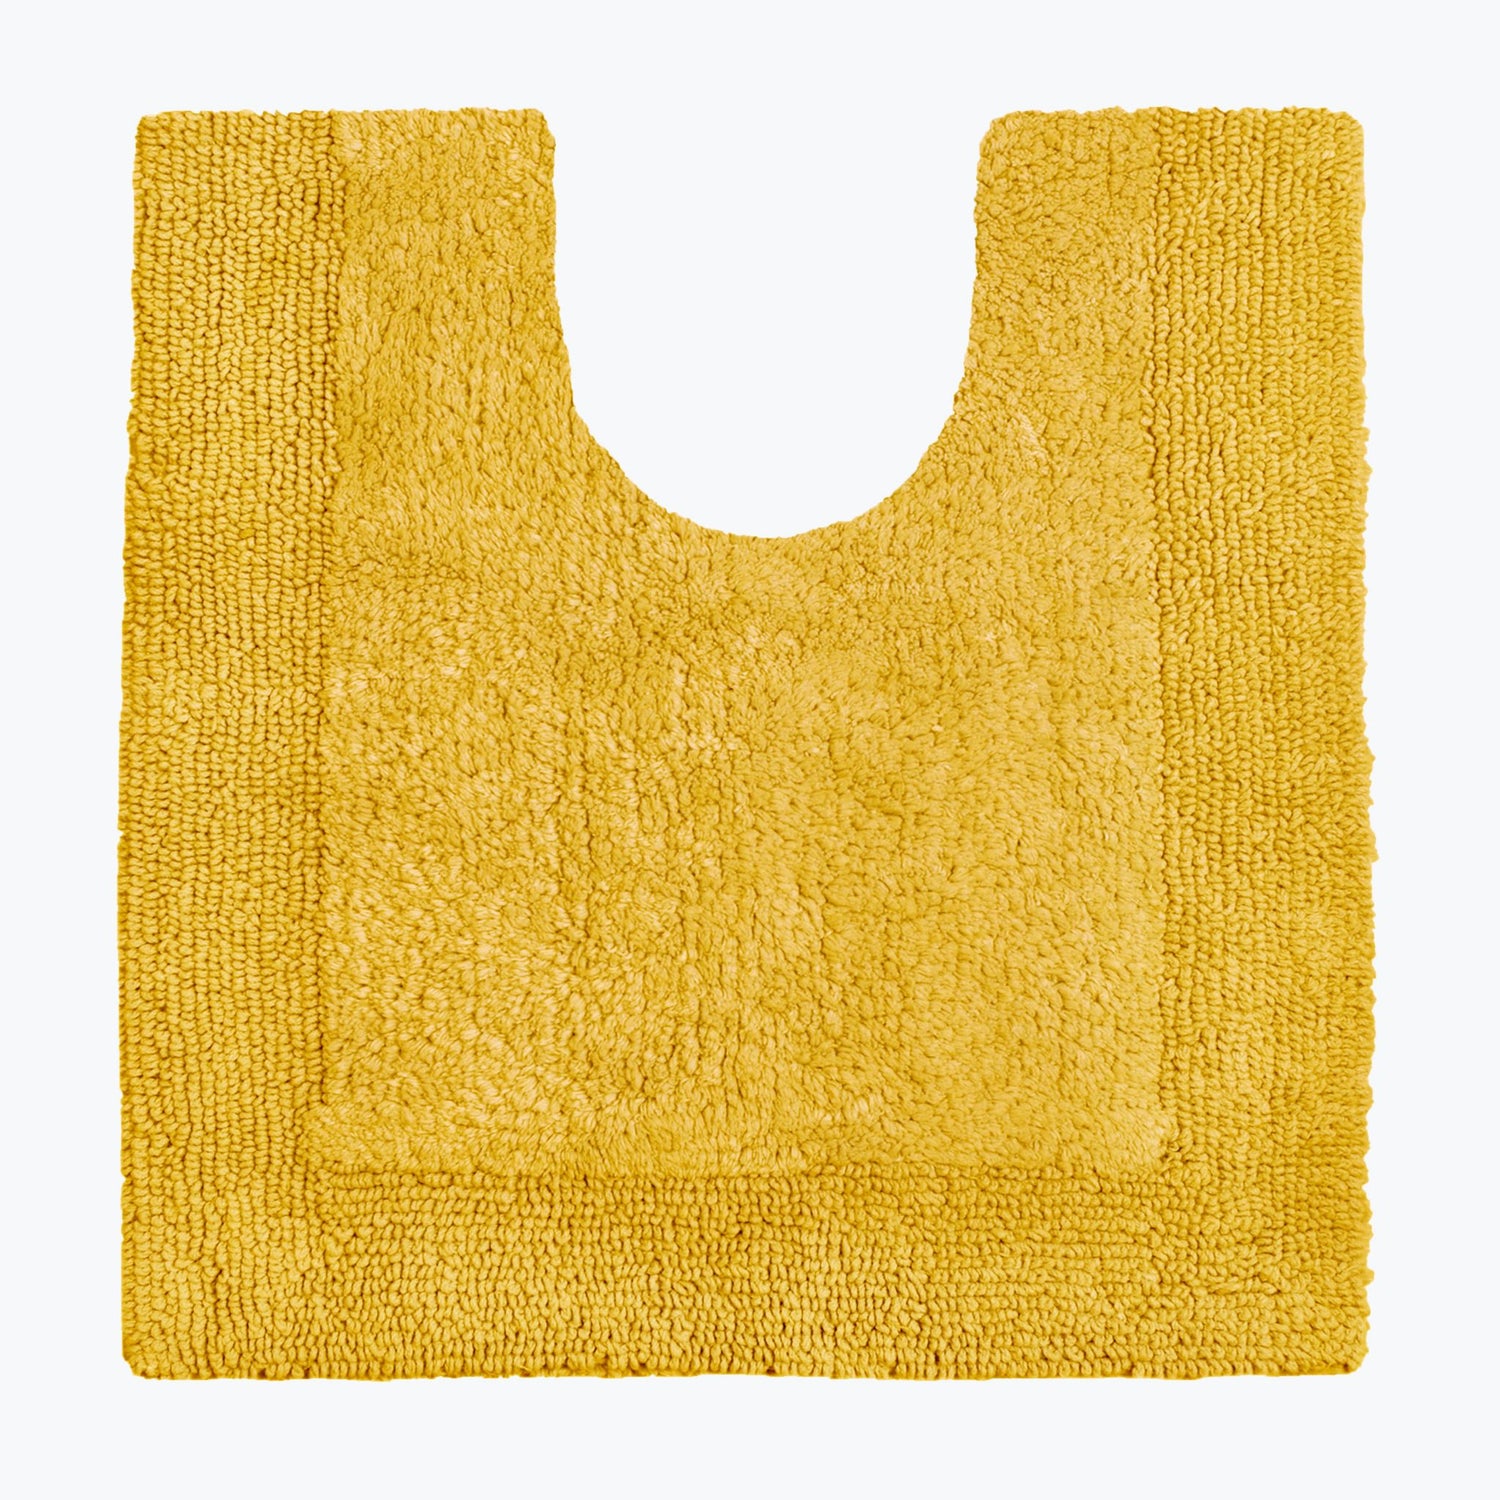 Mustard Pedestal Mat - Cotton Toilet Mat Super Soft and Reversible